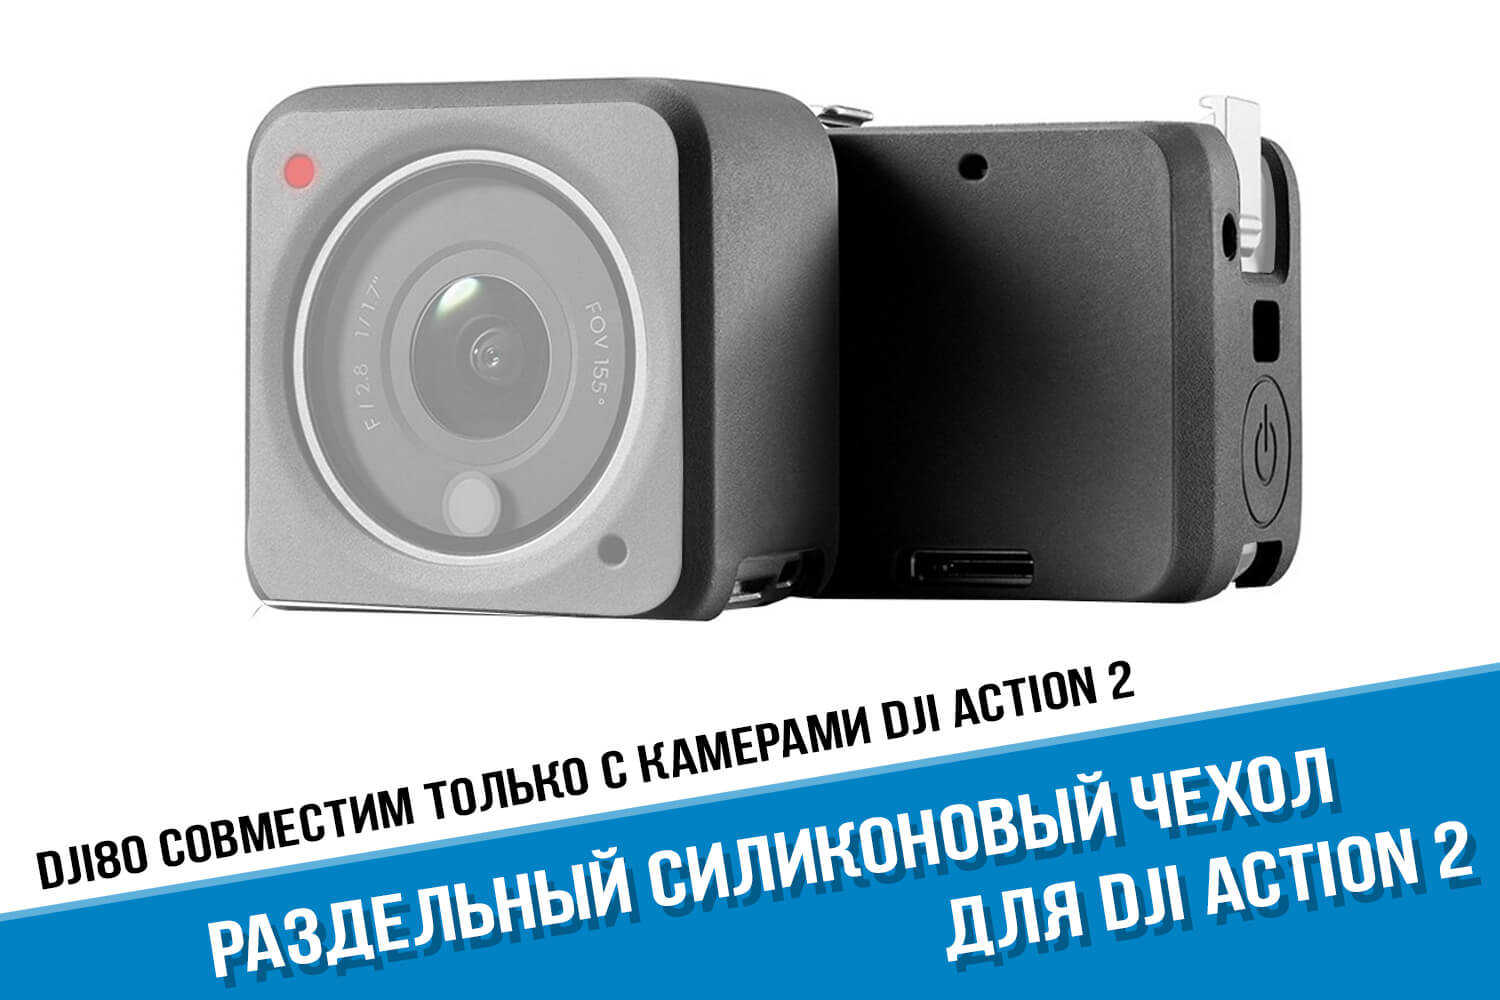 Раздельный силиконовый чехол для камеры DJI Action 2